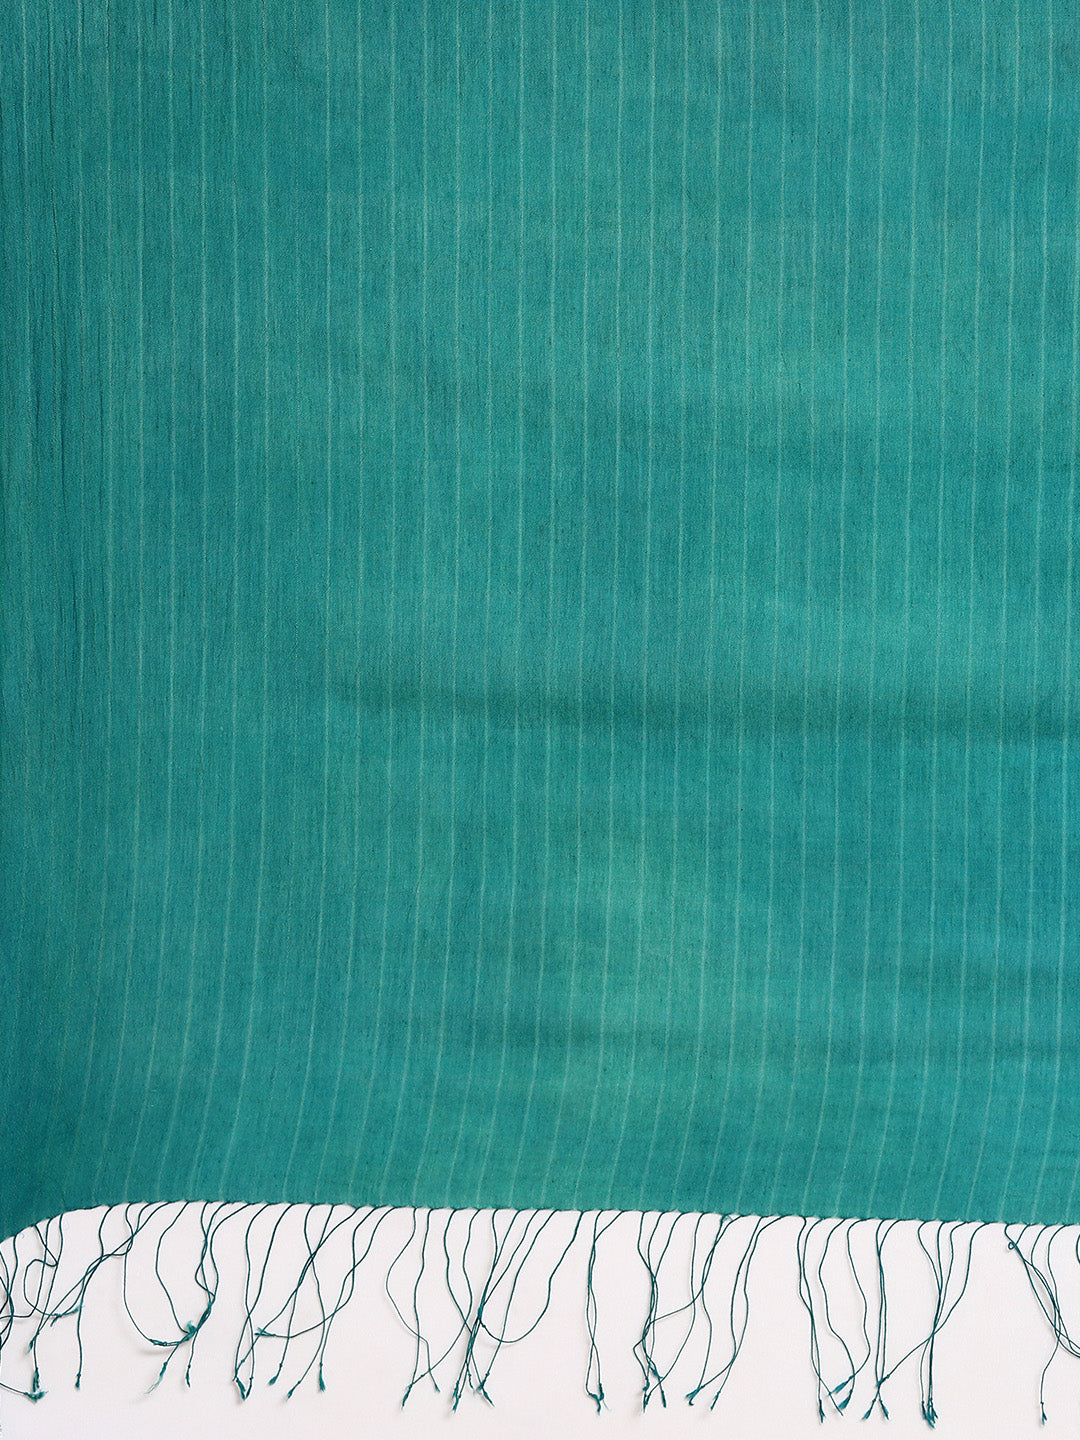 Sea Green Woven Shibori  Cotton Saree